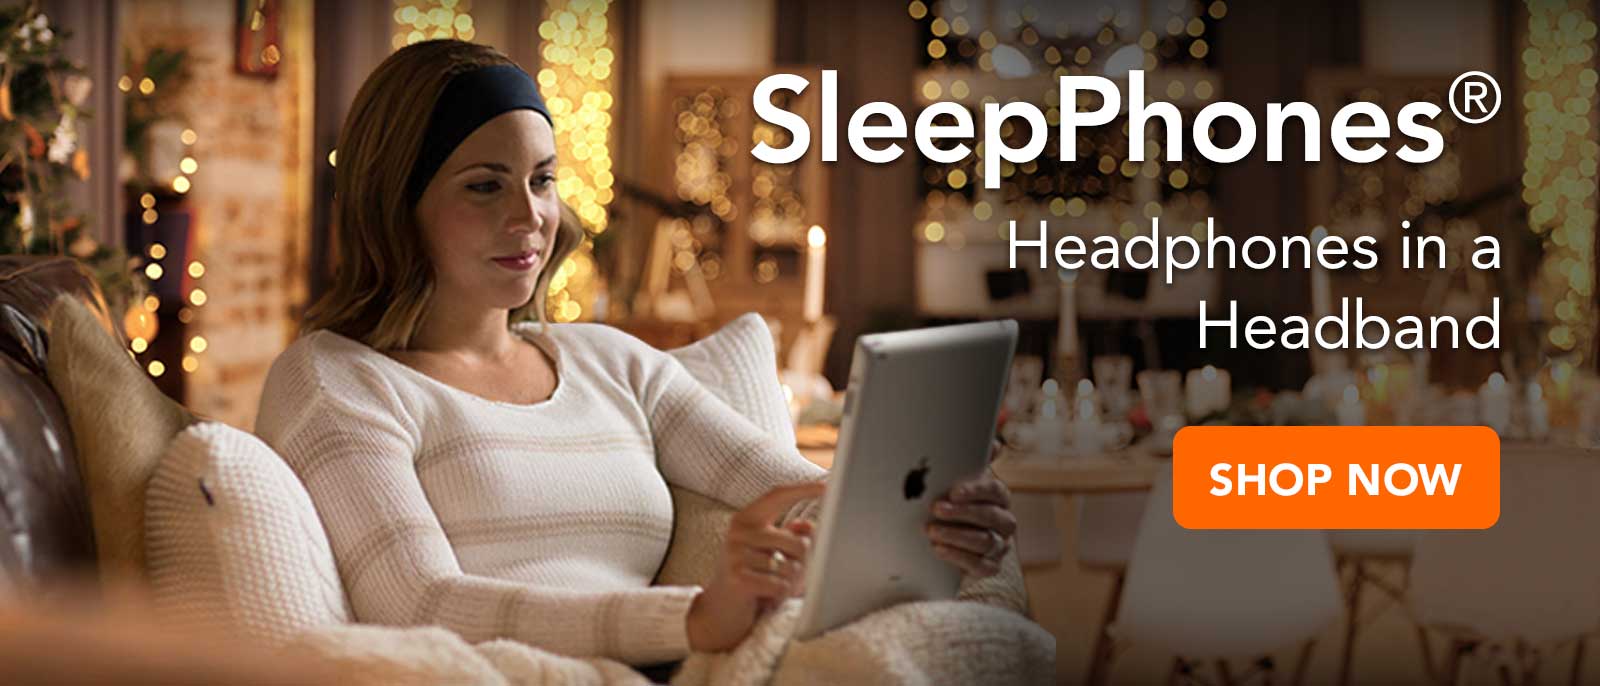 woman shopping to gift SleepPhones headphones